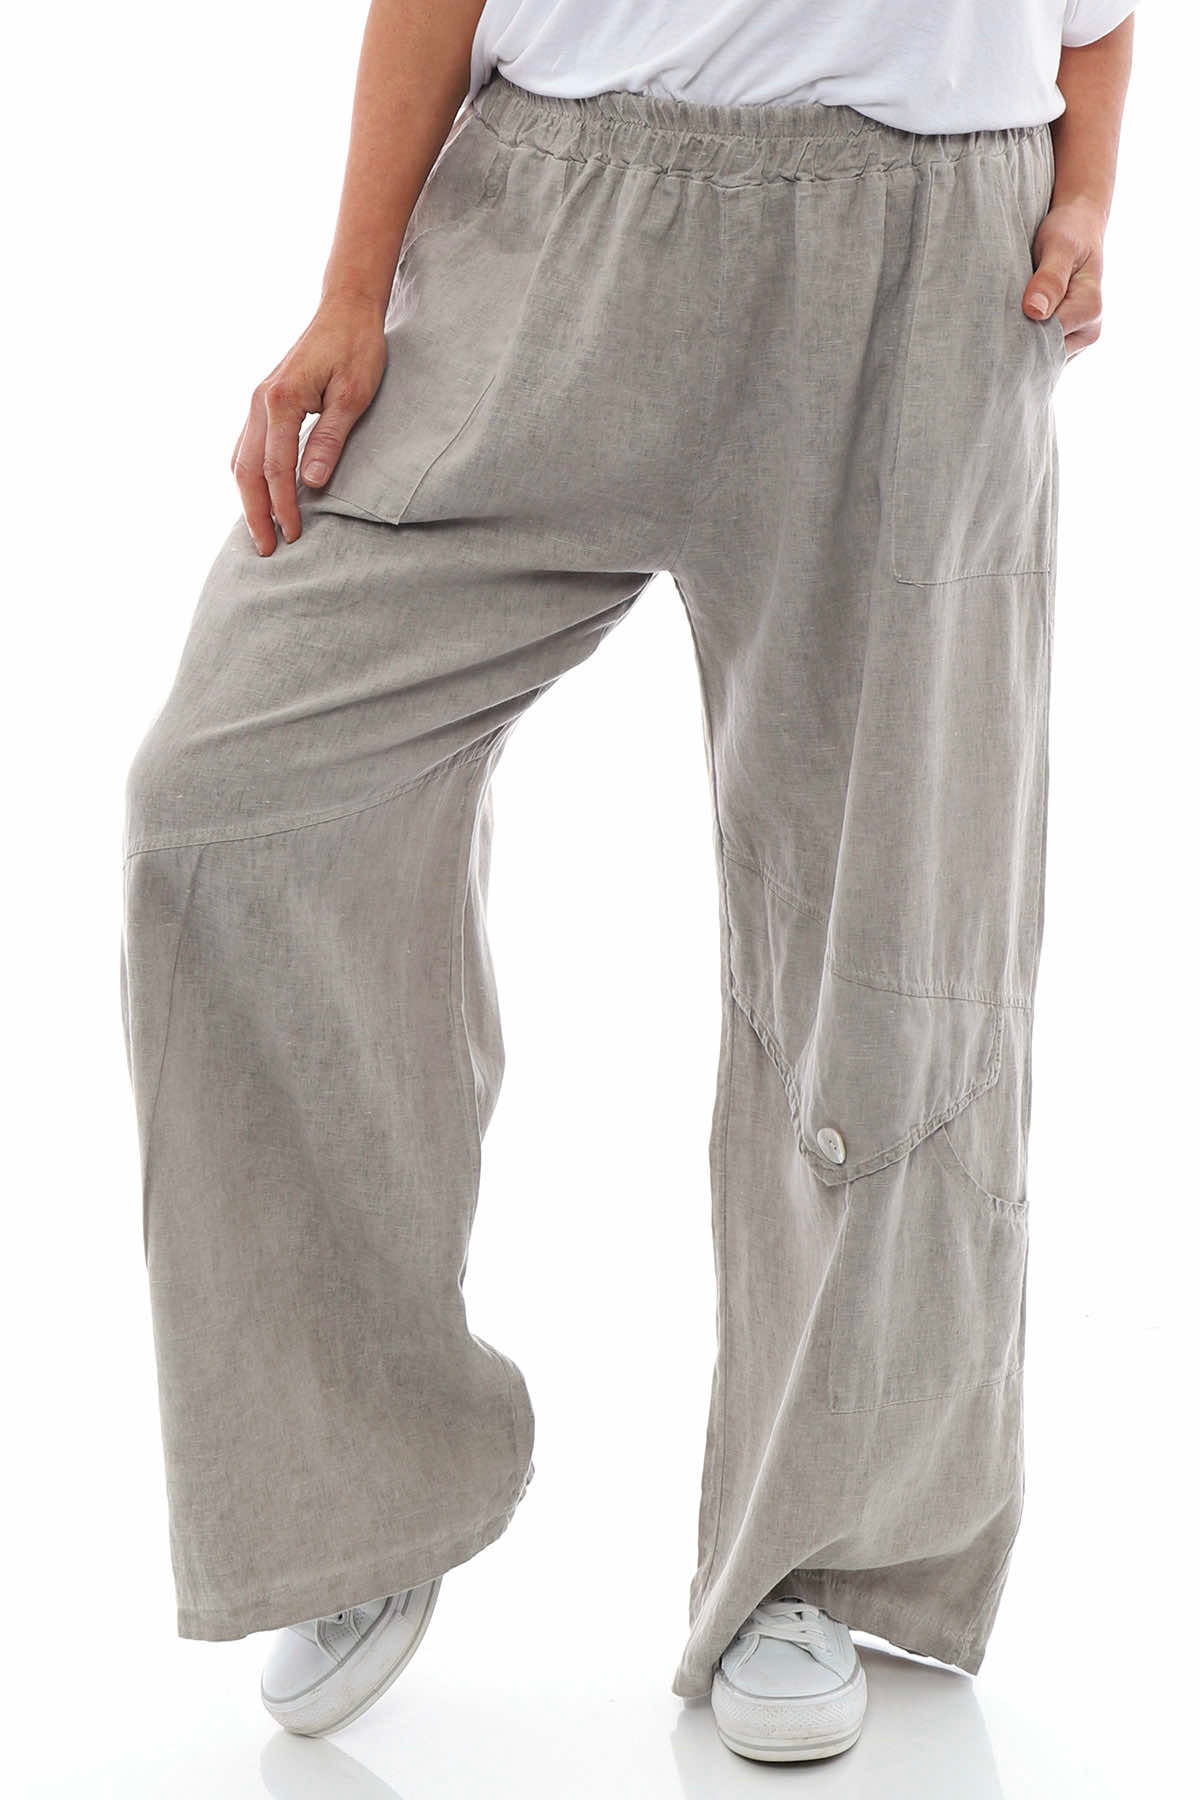 Womens Ladies Linen Trousers Full Length UK Size 10 12 14 16 18 20 | eBay